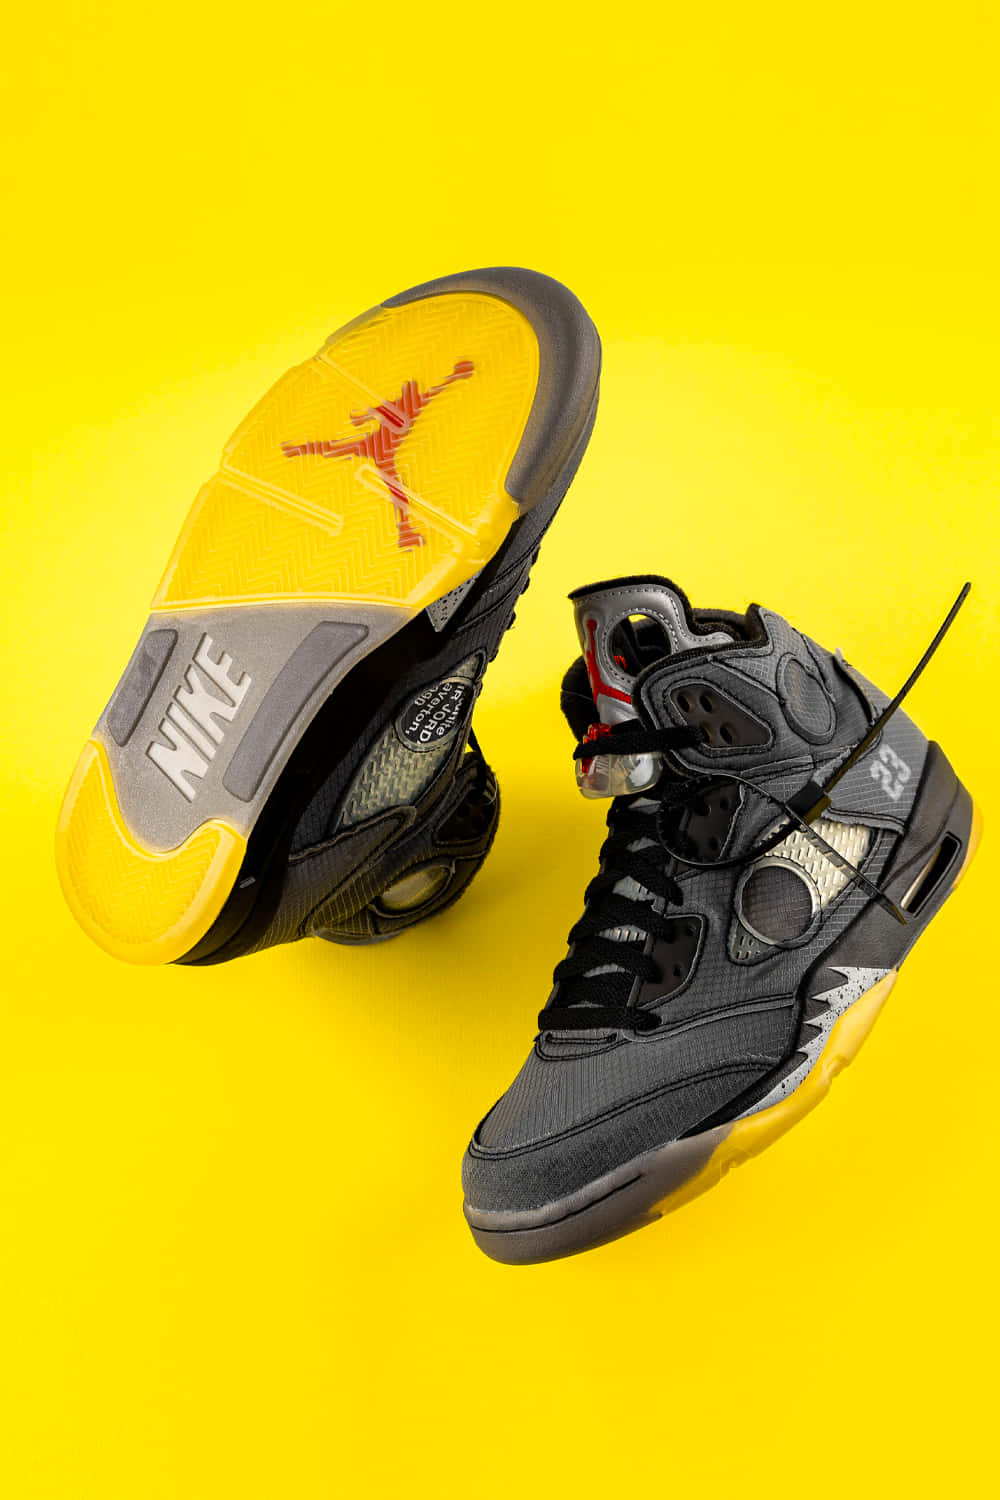 Gult Jordan sneakers skaber et dristigt udtryk mod en denim-struktureret tapet. Wallpaper